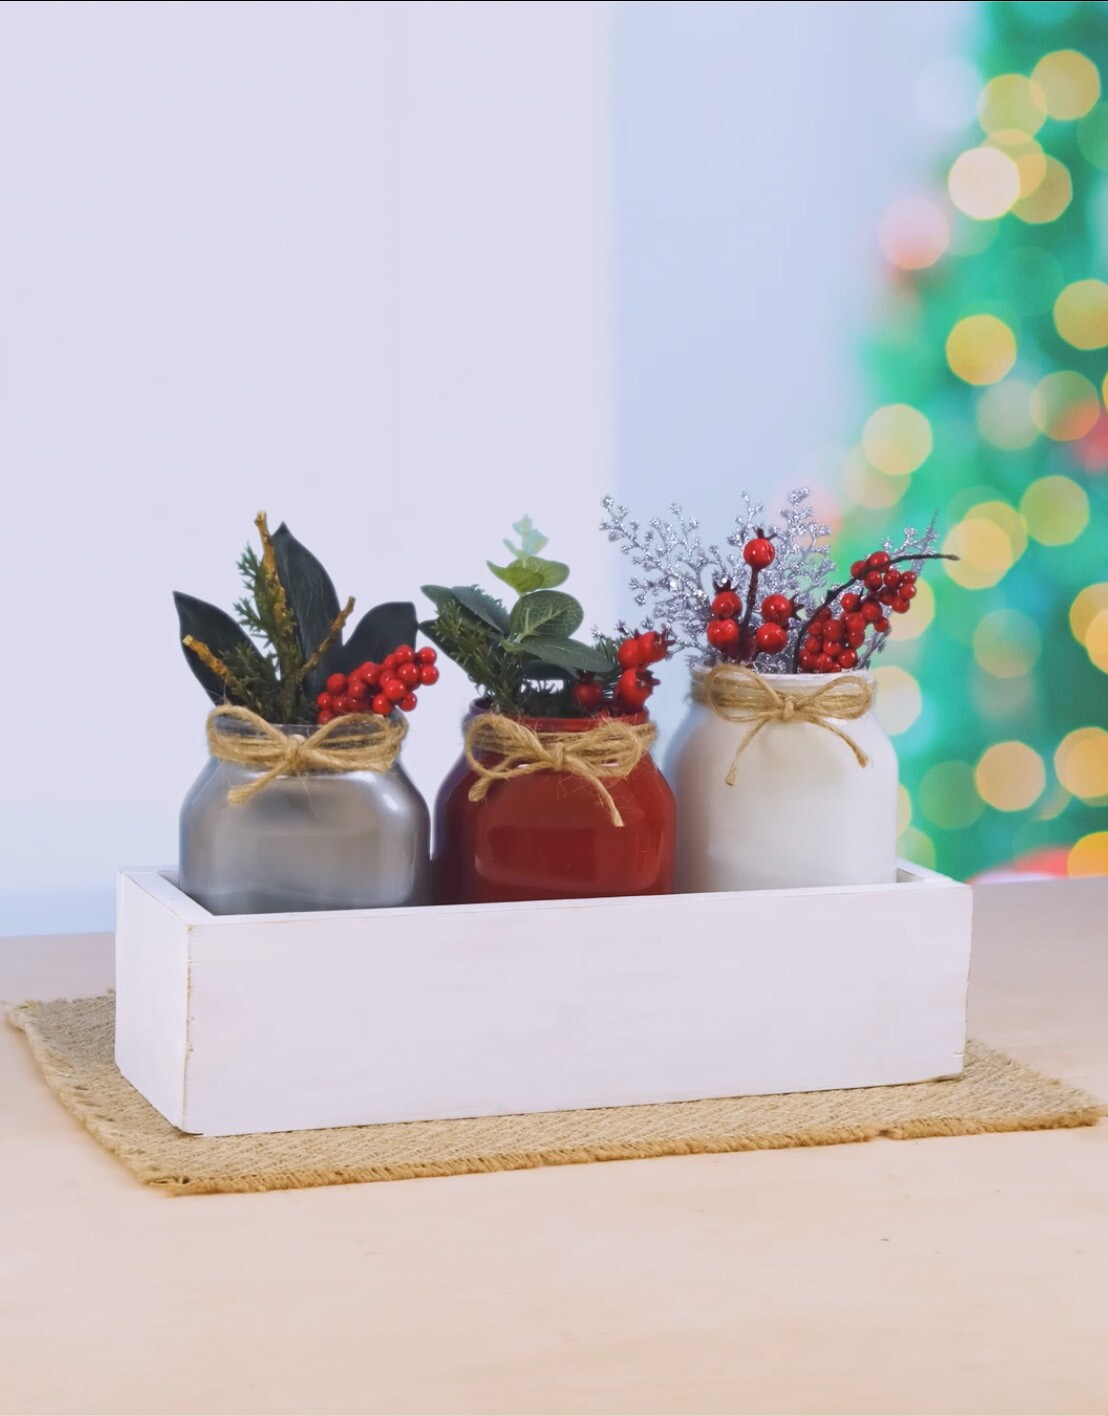 nutella®-Glas - DIY Tischdekoration für Weihnachten